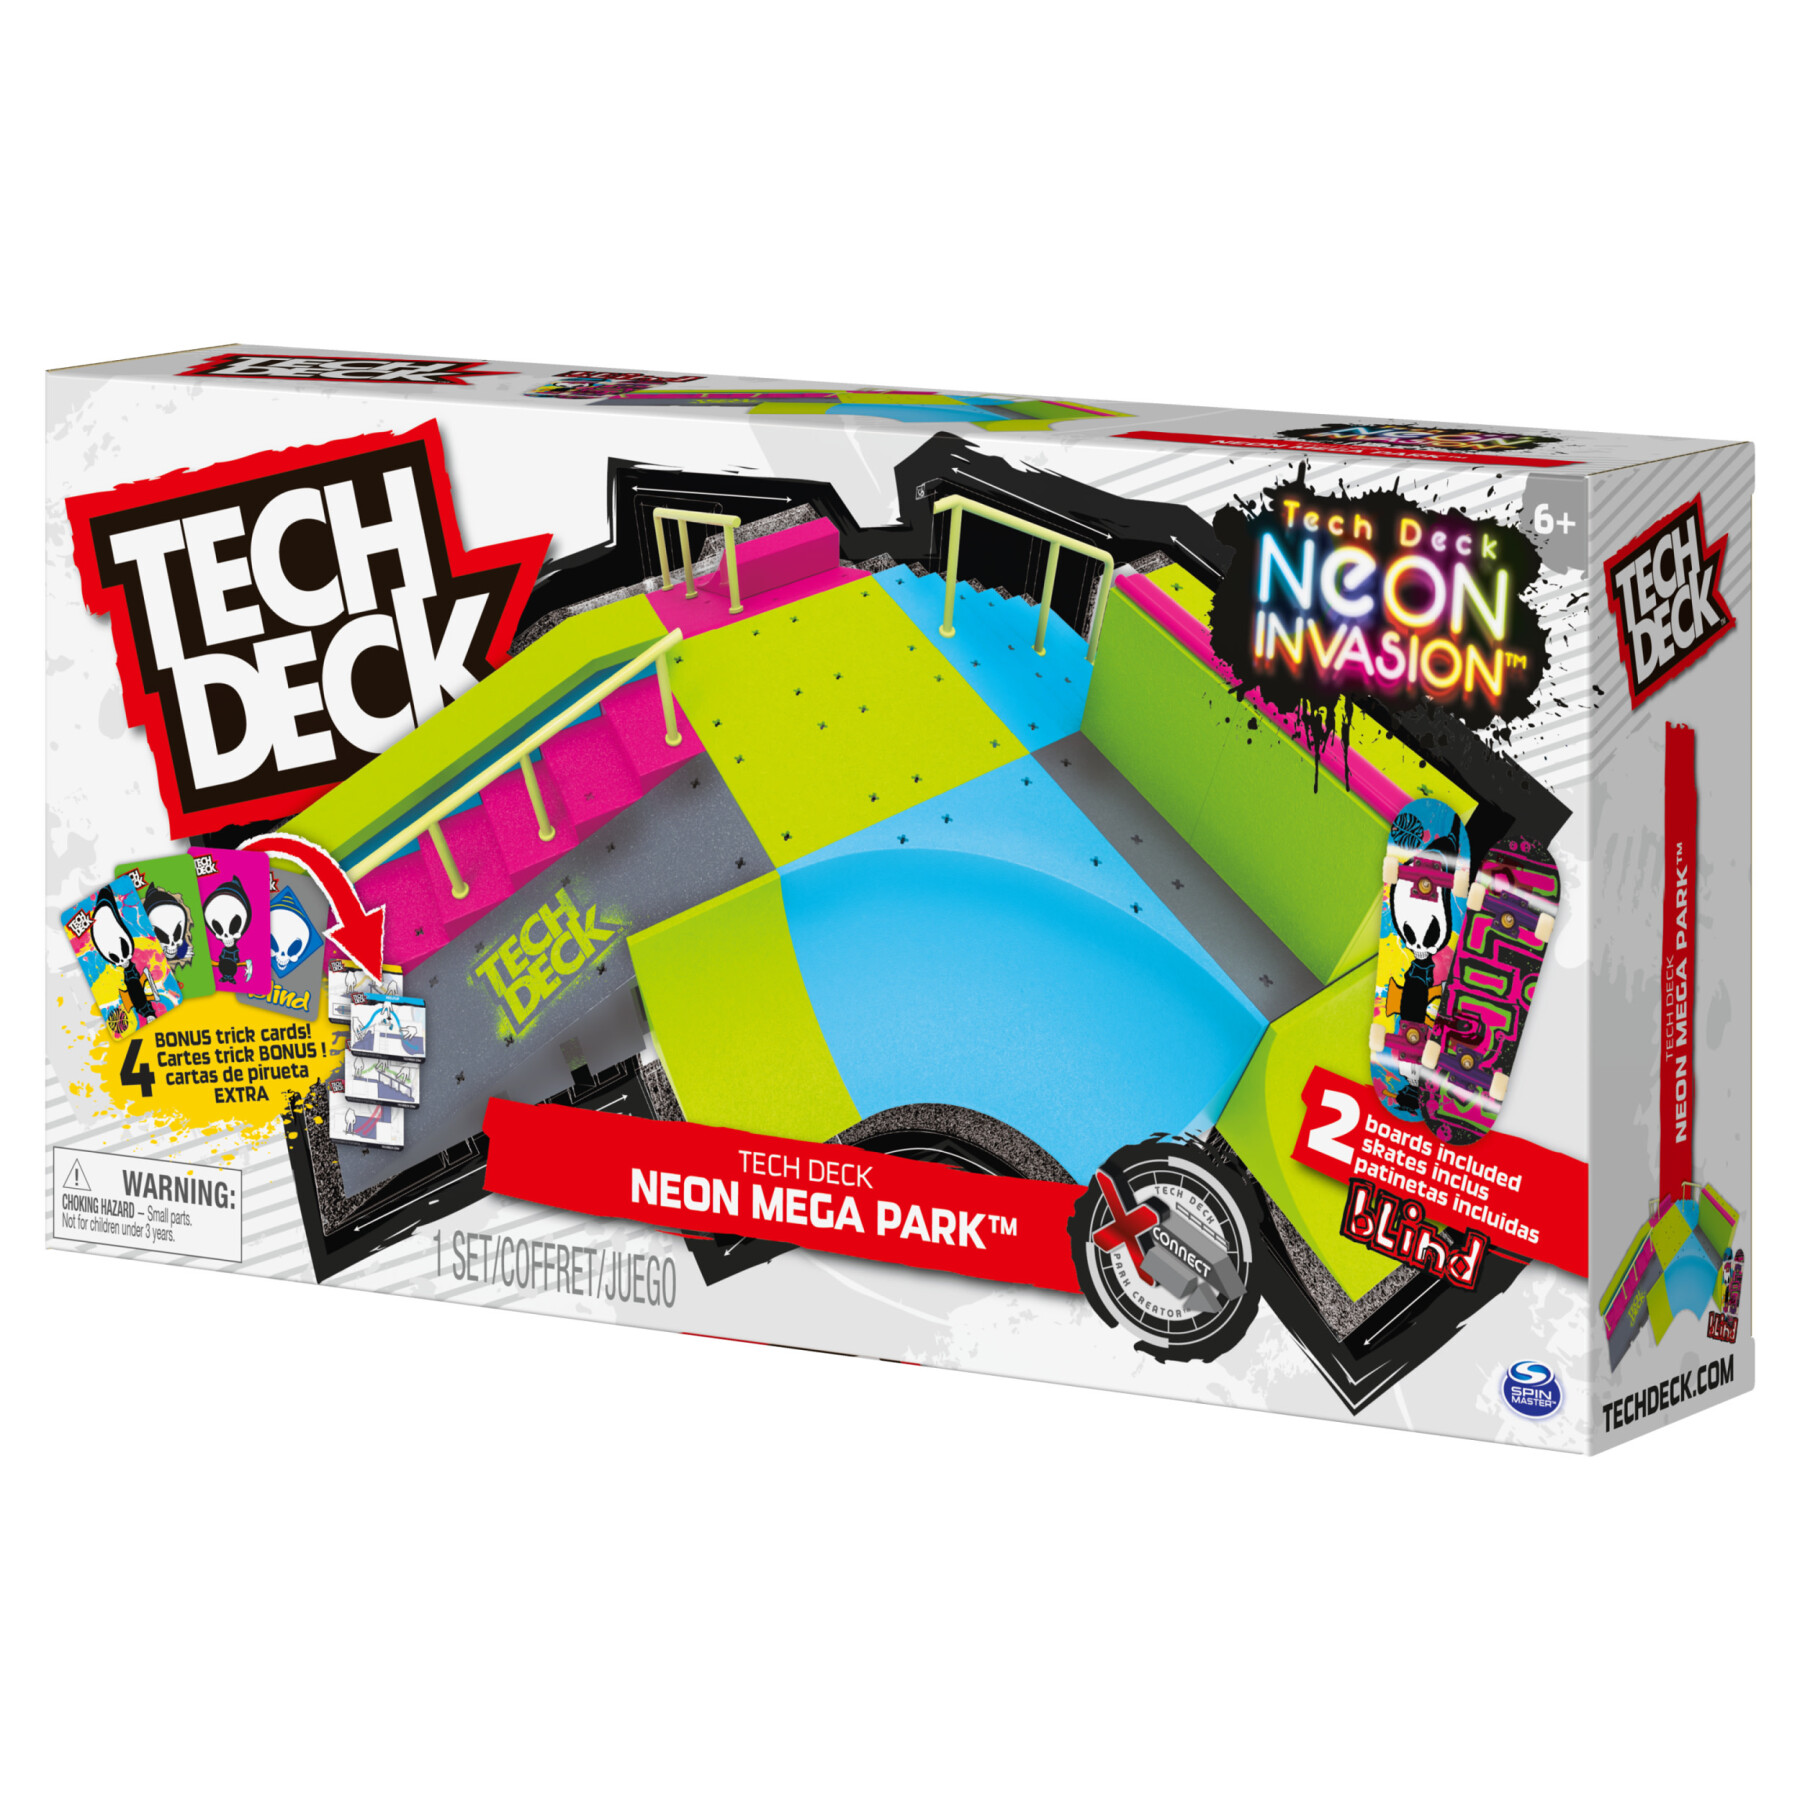 Tech deck, neon mega park x-connect creator, set di rampe personalizzabile fosforescente con due fingerboard, giocattolo per bambini e bambine dai 6 anni in su - TECH DECK